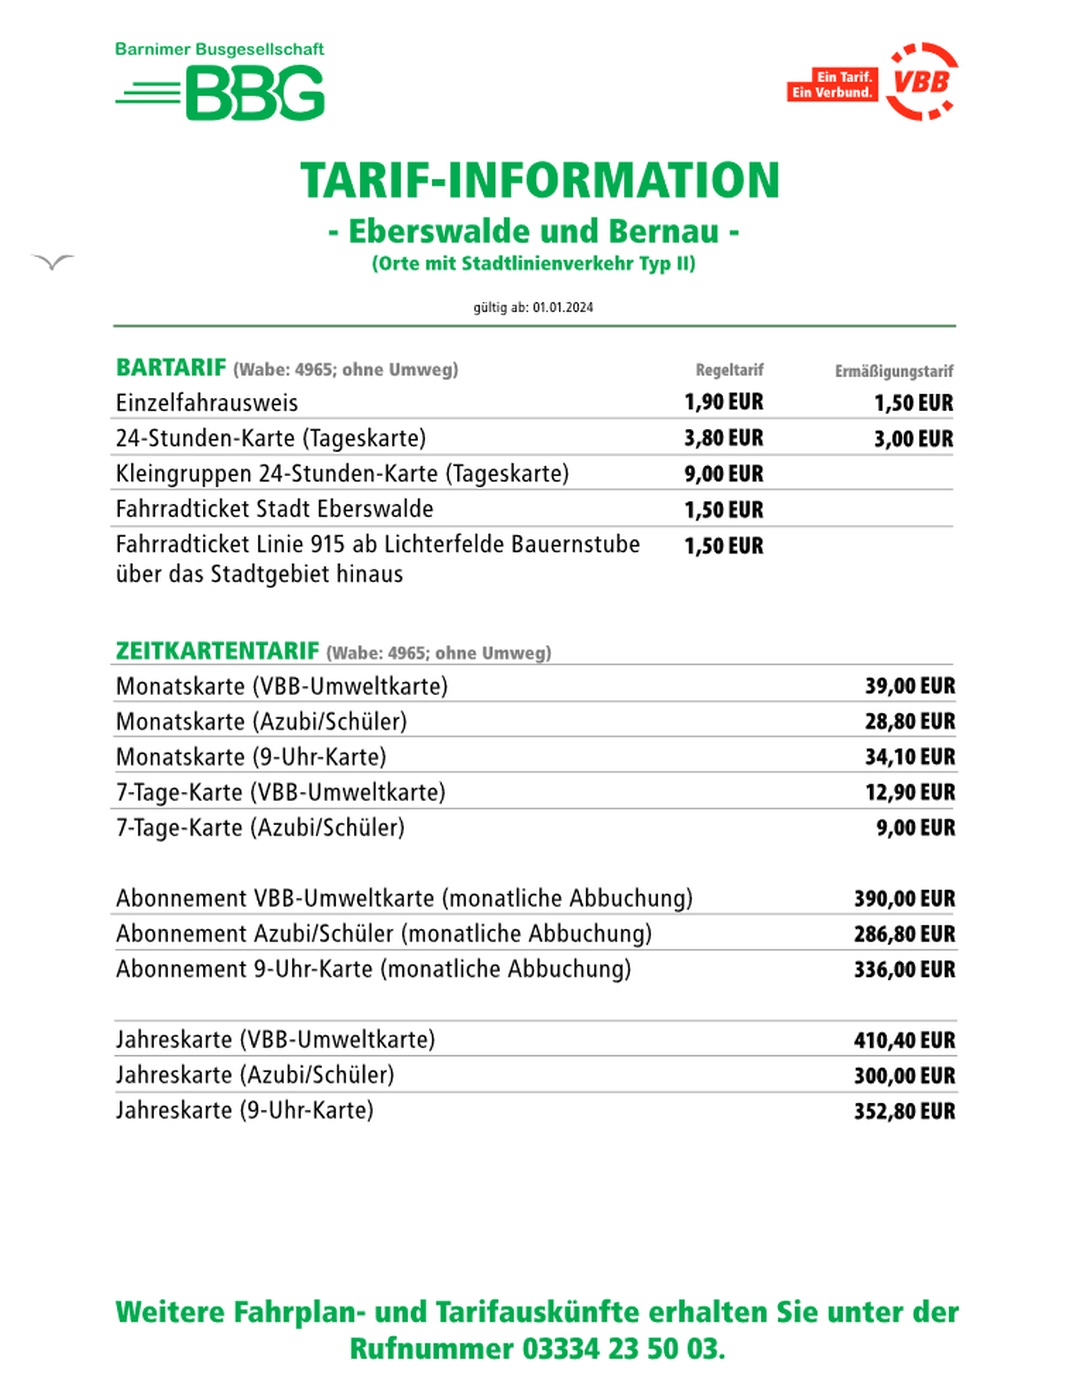 Tarif-Information gültig ab 01.01.2024